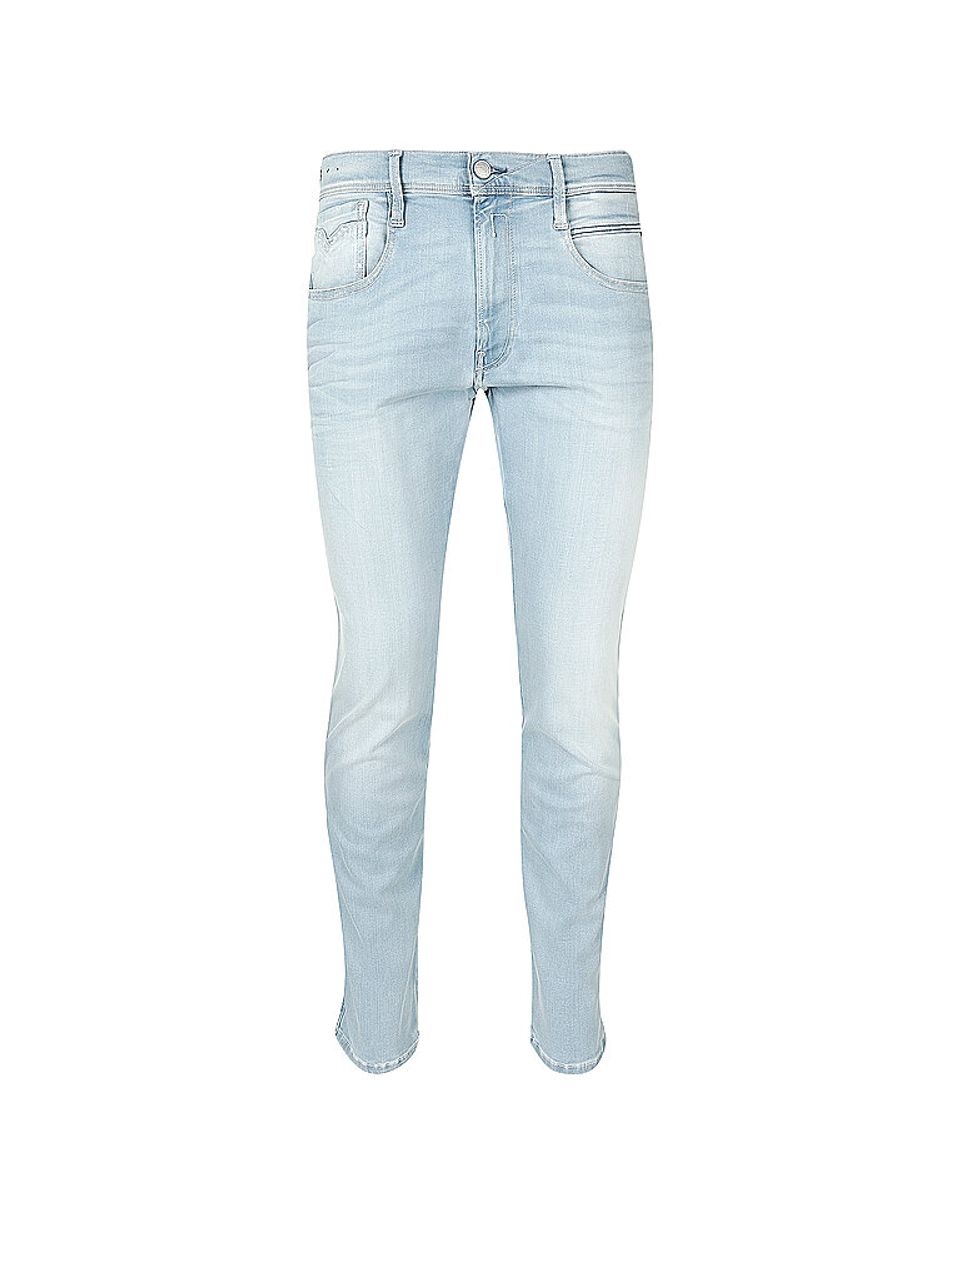 REPLAY Jeans Slim Fit Anbass X-Light blau | 30/L30